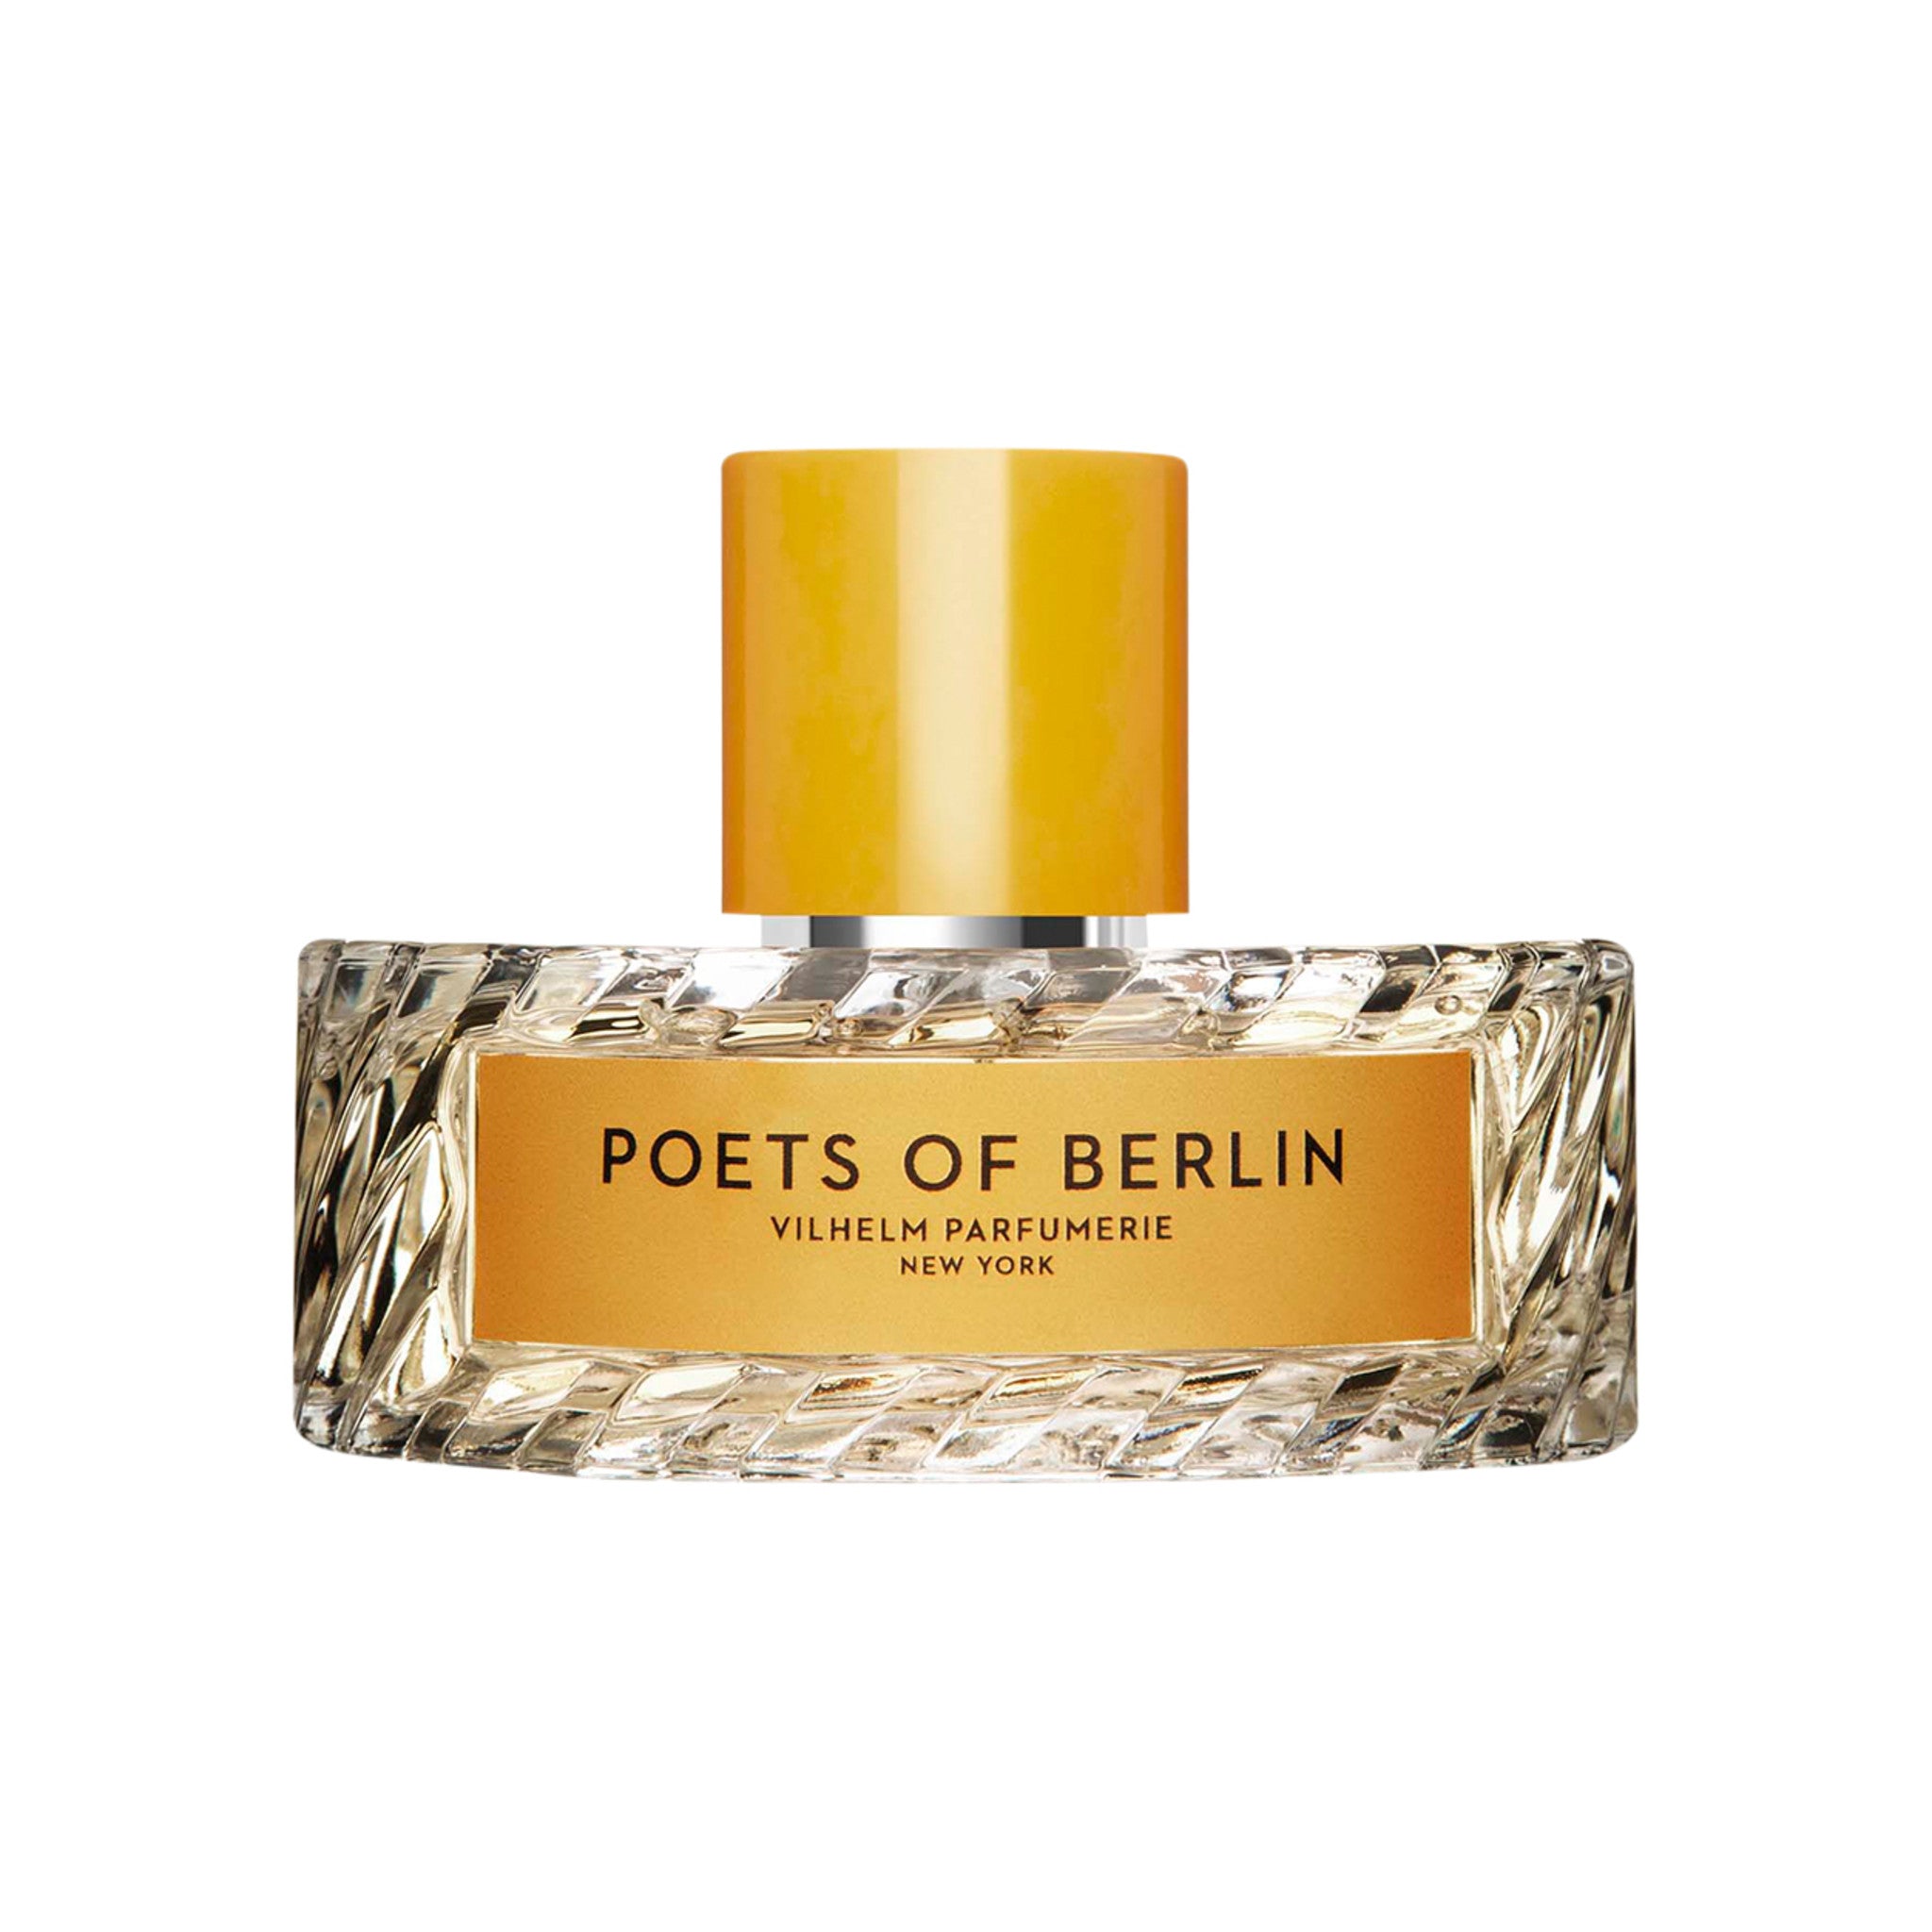 Vilhelm Parfumerie Poets of Berlin Eau de Parfum Size variant: 100 ml main image.